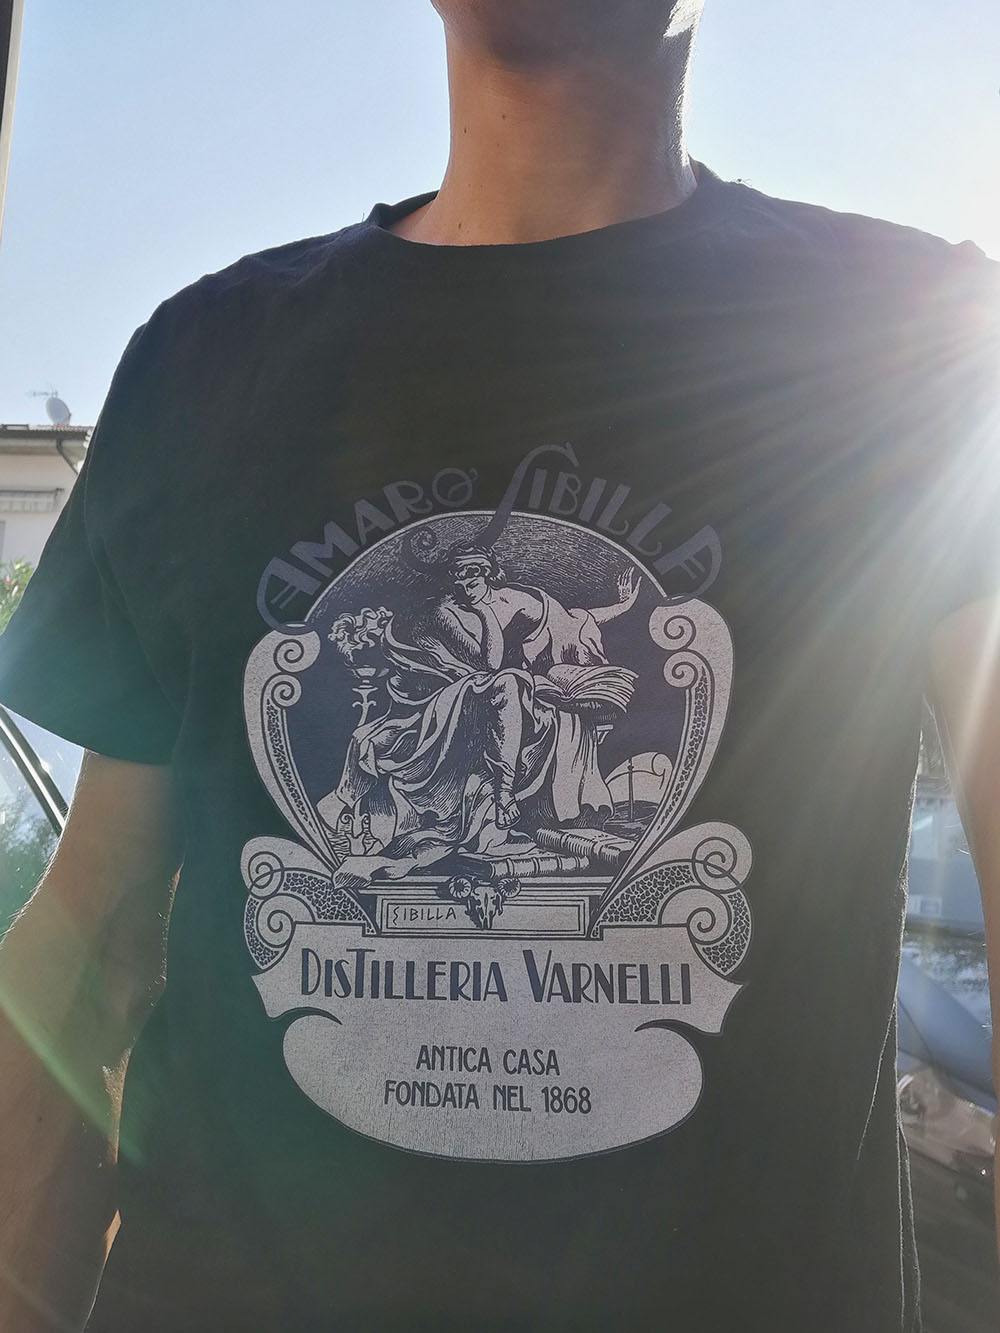 La maglia ufficiale dell'Amaro Sibilla prodotto dalla Distilleria Varnelli